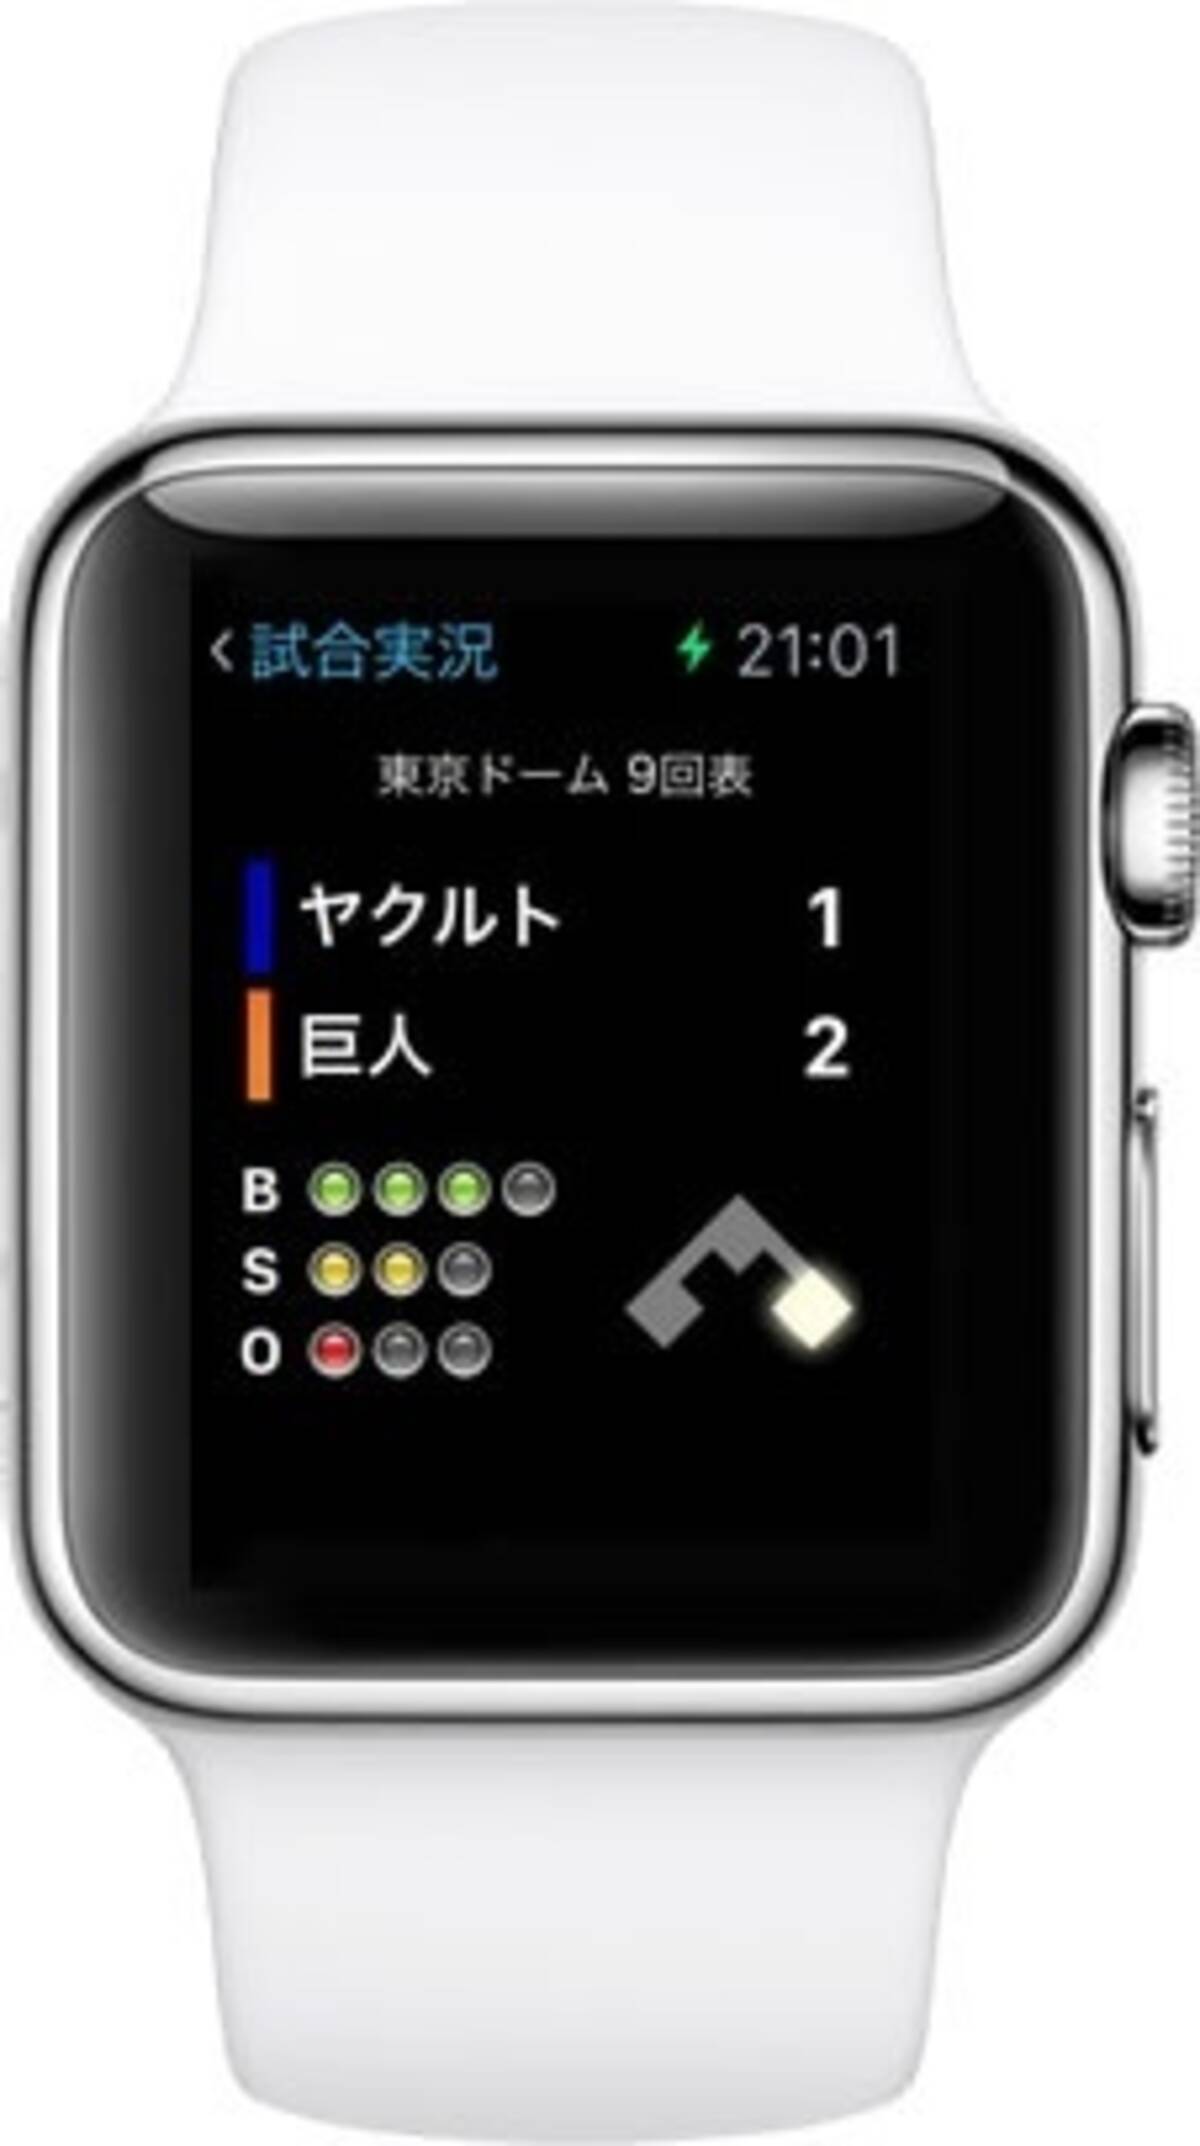 ズームデザイン Apple Watchに対応したios用プロ野球速報アプリ プロ野球 Data Live 5 3 をリリース 15年4月23日 エキサイトニュース